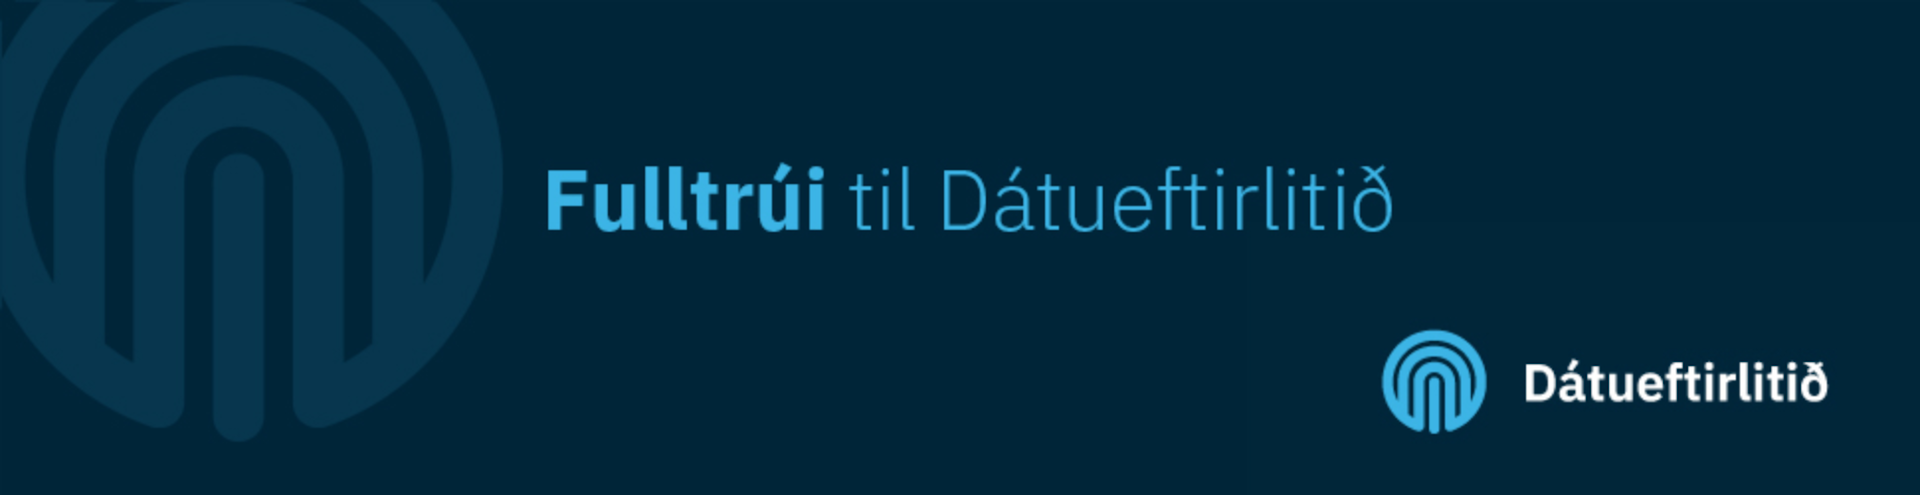 Fulltrúi til Dátueftirlitið